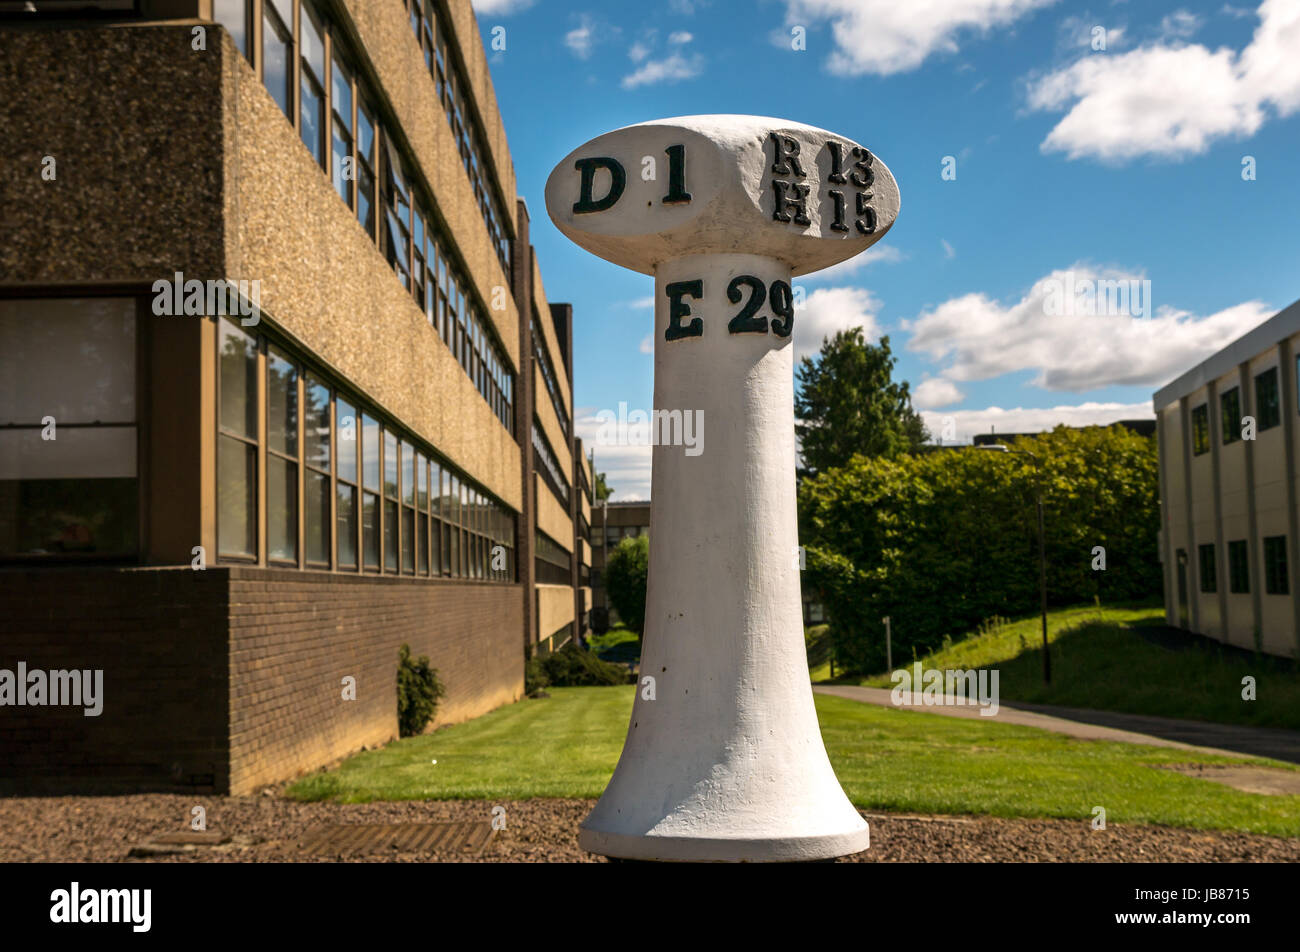 Un vieux déplacés1 mile marker à Dunbar, Édimbourg et Haddington, route de l'art, campus de l'Université Heriot Watt, Riccarton, Edinburgh, Ecosse, Royaume-Uni Banque D'Images